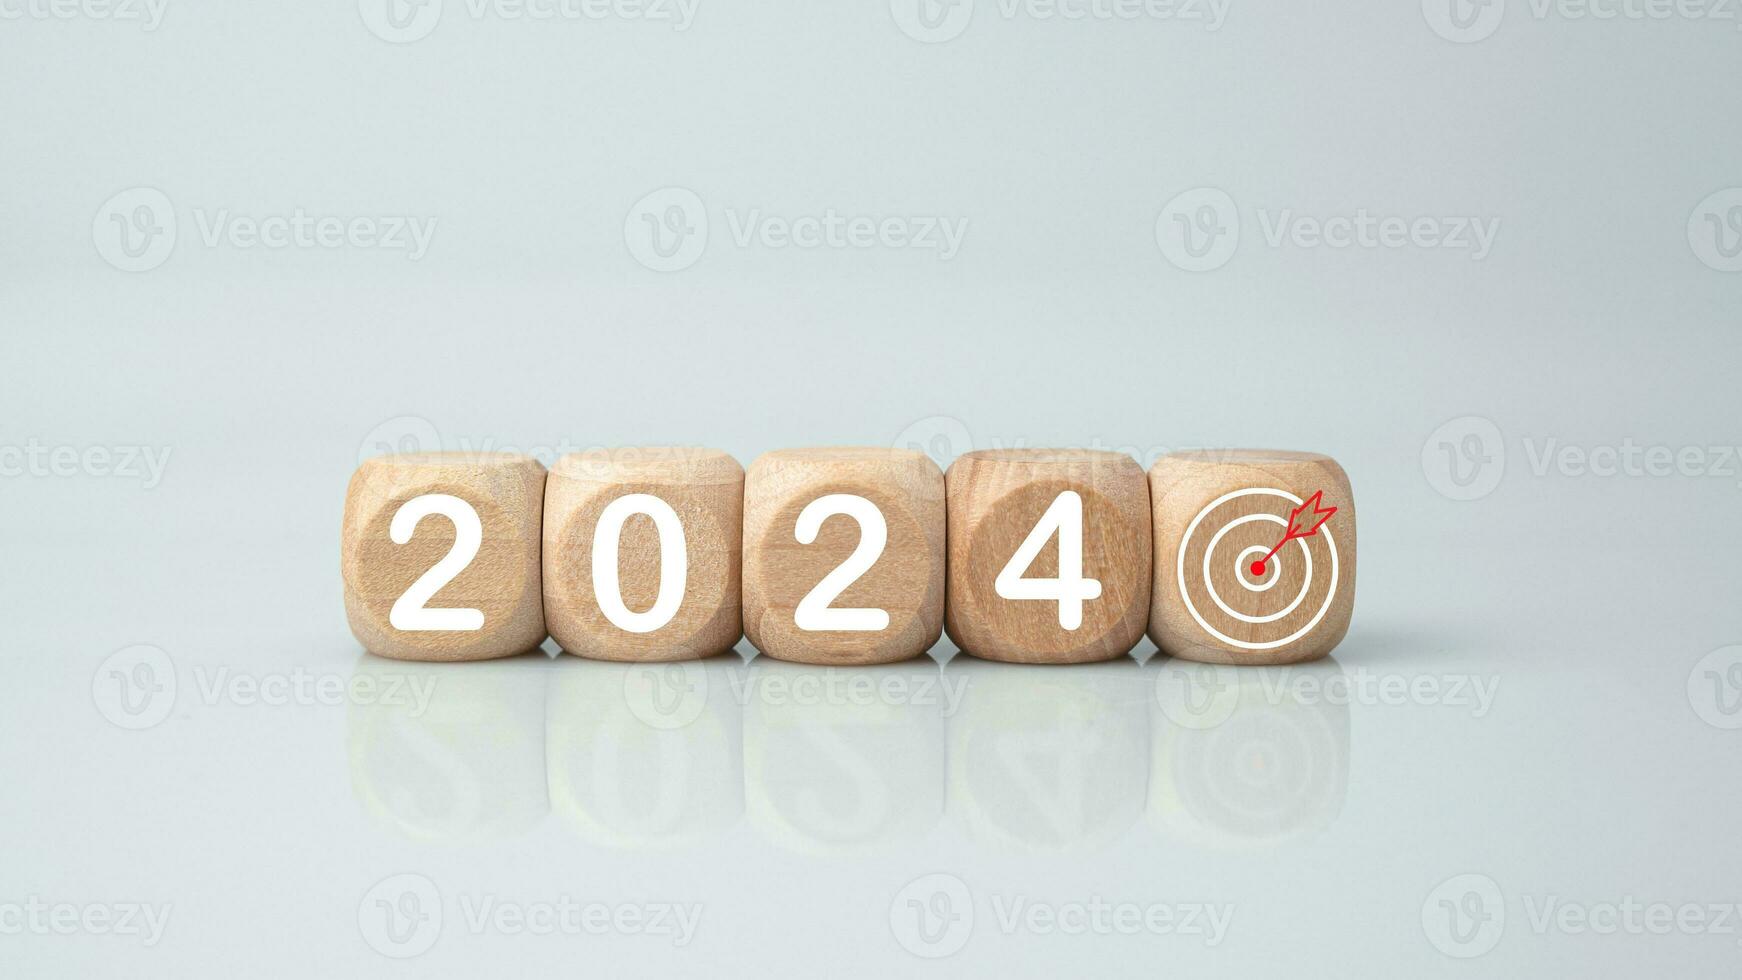 de madeira blocos forrado acima com a cartas 2024. representa a objetivo configuração para 2024, a conceito do uma começar. financeiro planejamento desenvolvimento estratégia o negócio objetivo configuração foto